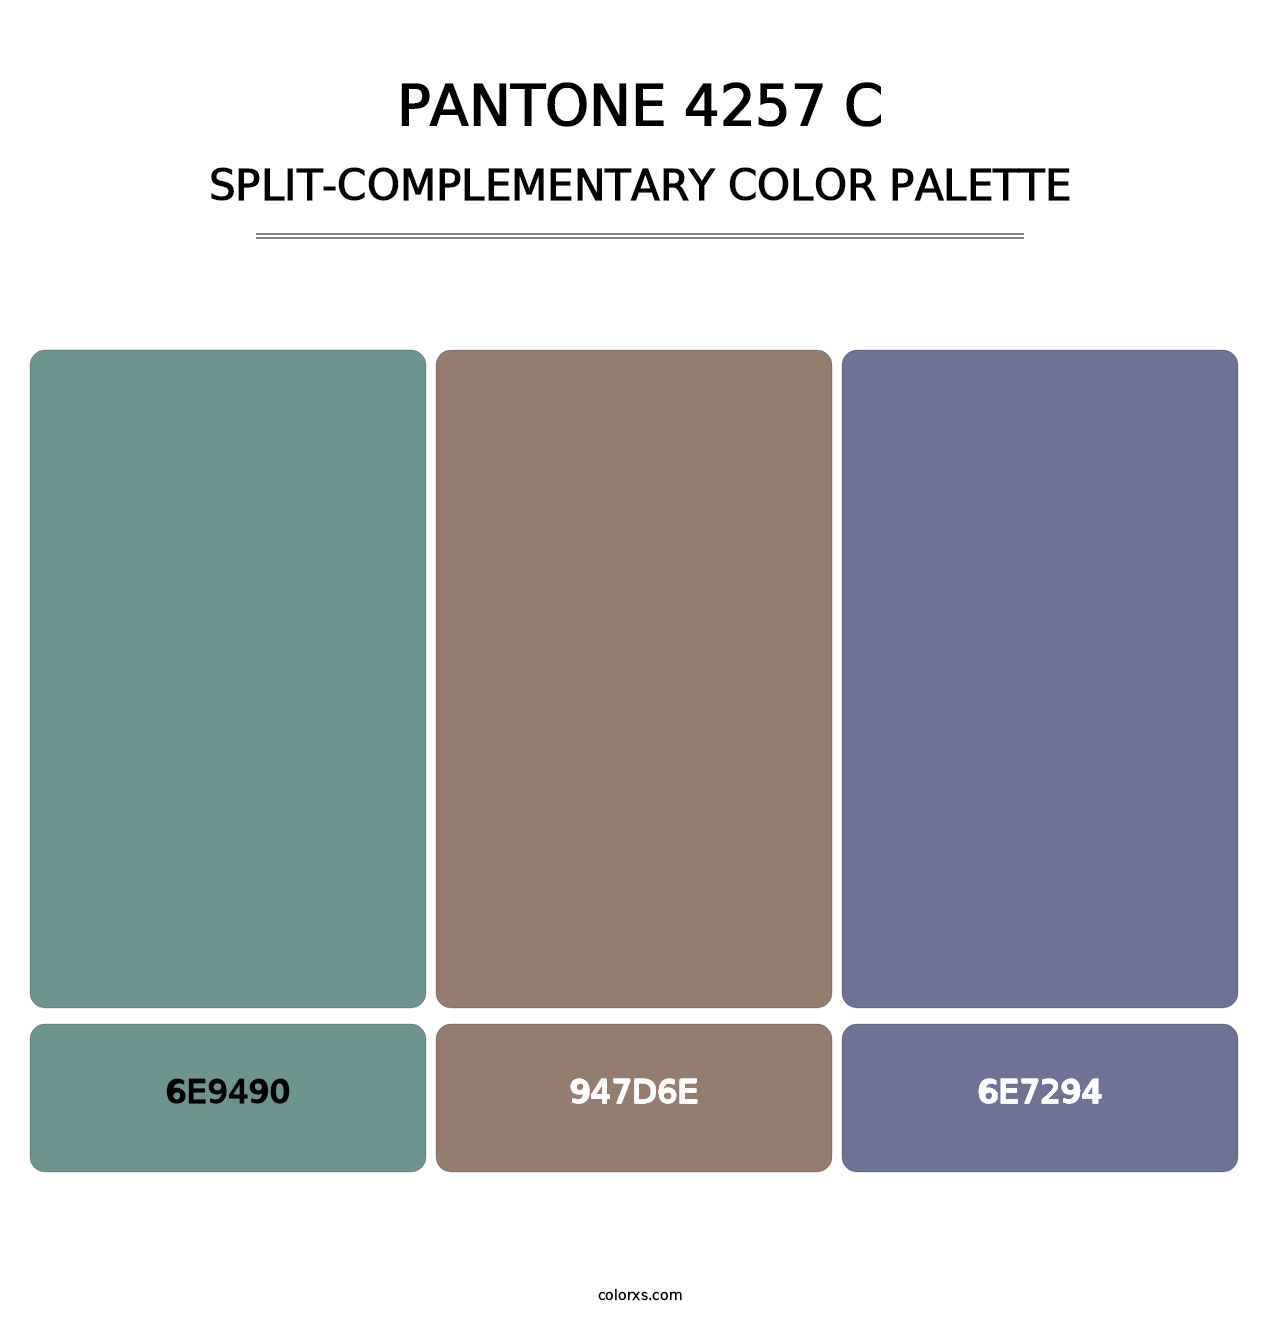 PANTONE 4257 C - Split-Complementary Color Palette